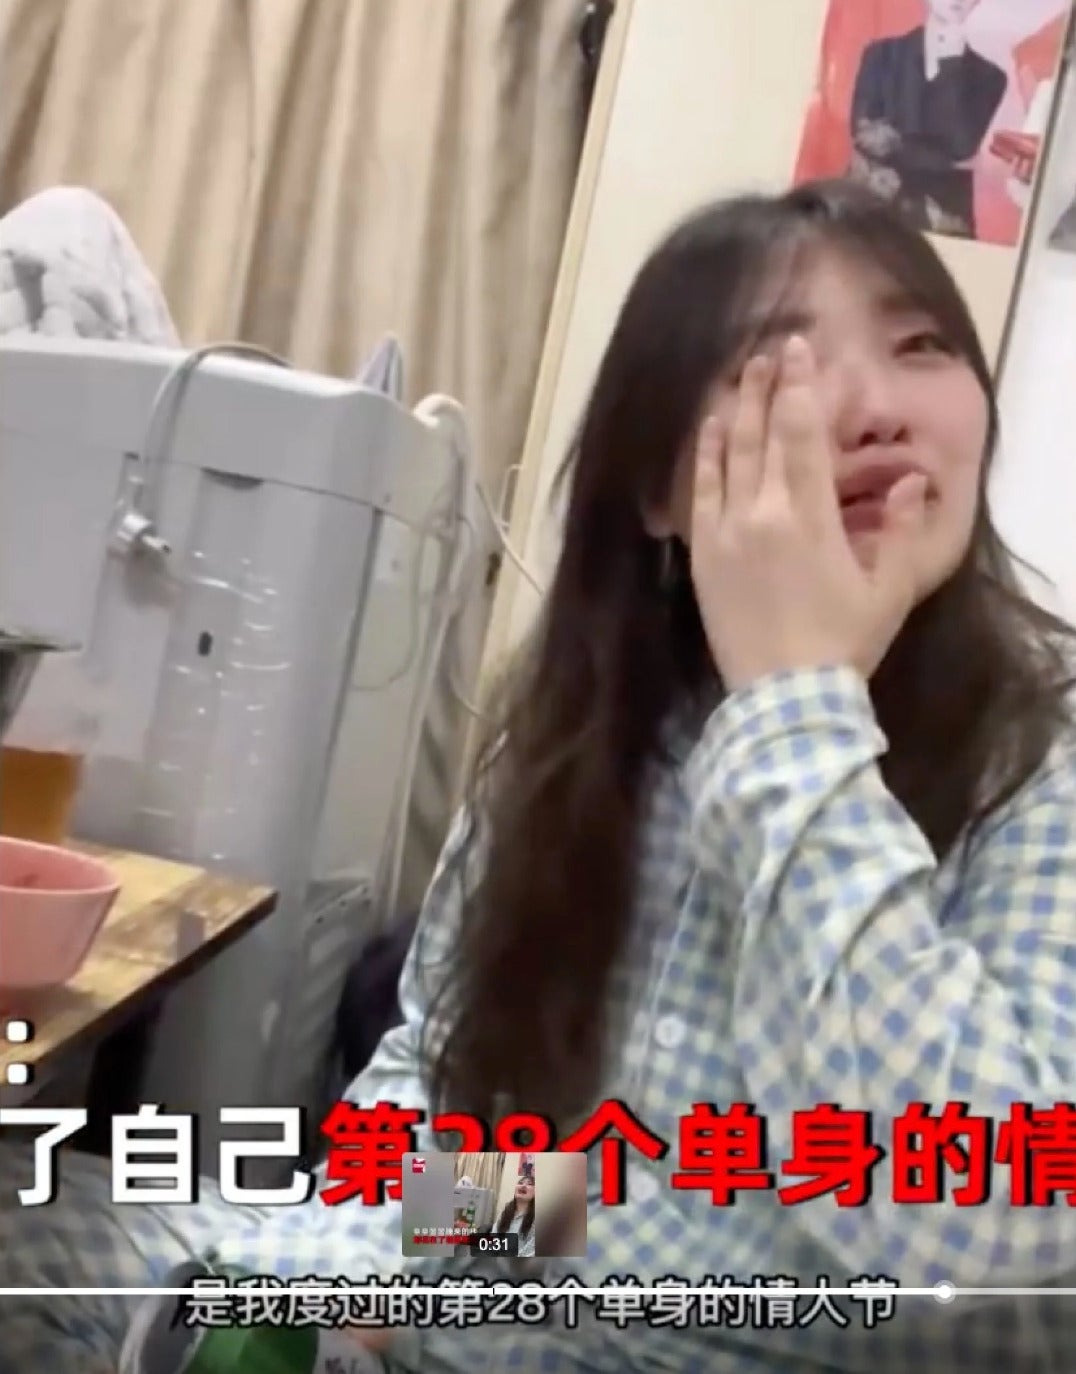 สาวจีนวัย 28 ไม่เคยมีแฟน ถ่ายคลิปร้องไห้ ไวรัล